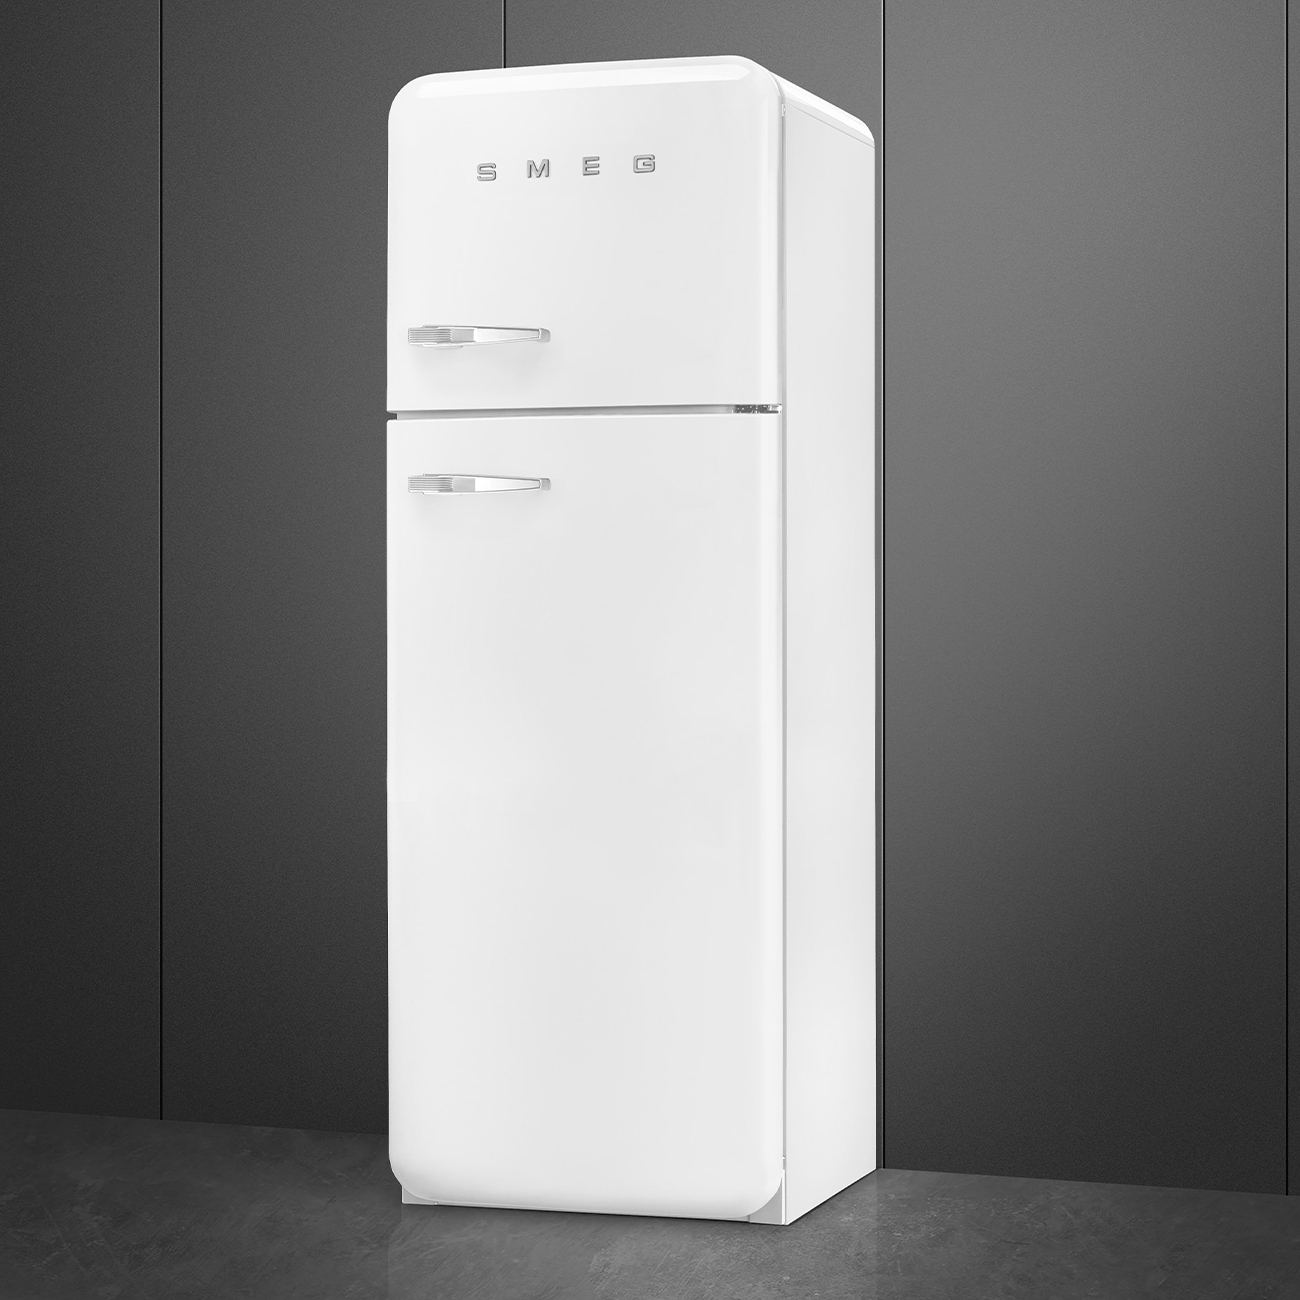 White refrigerator - Smeg_4